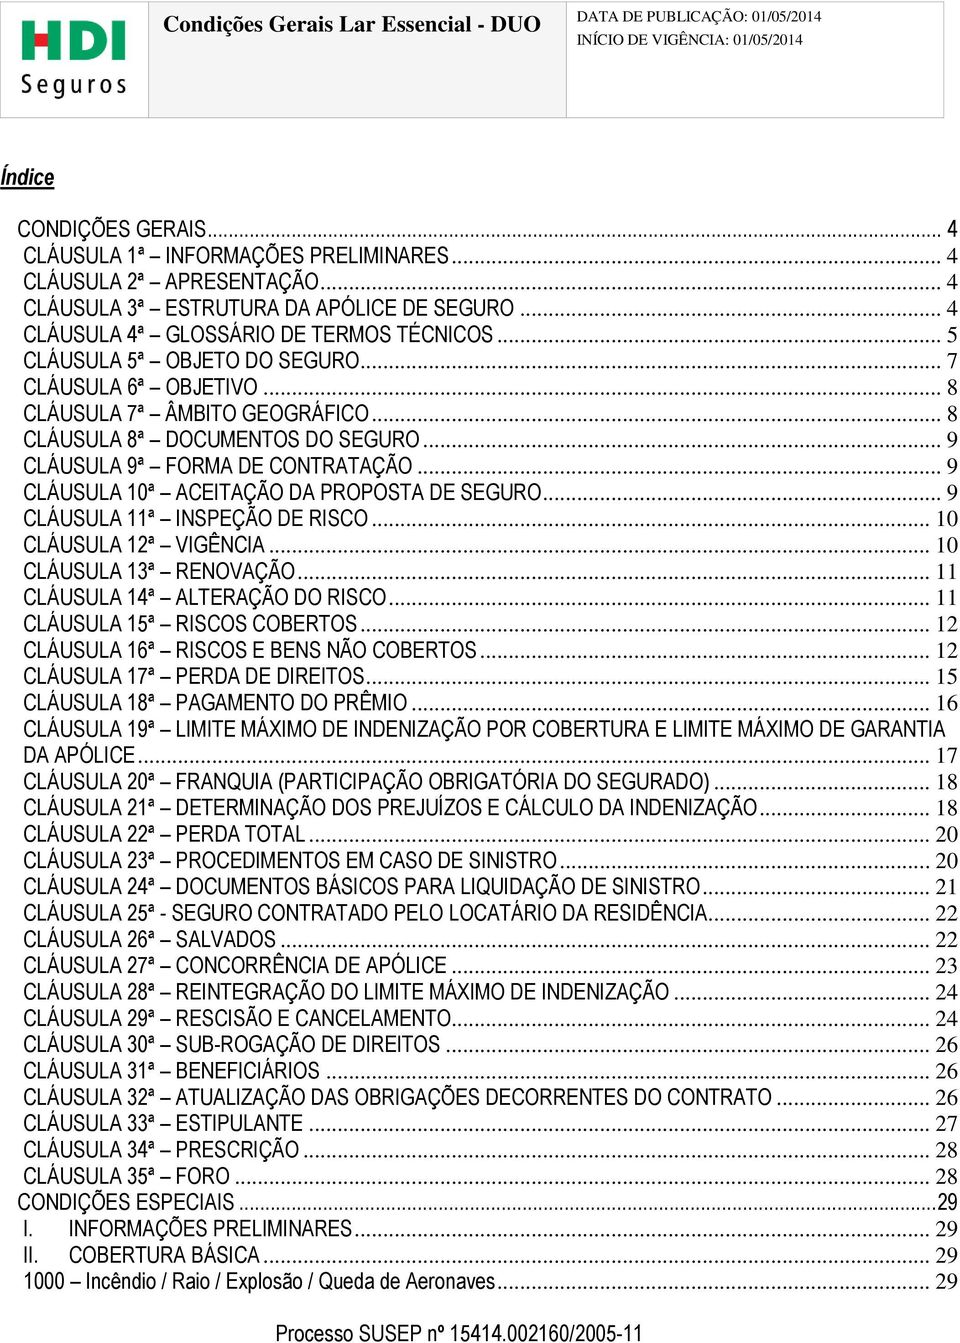 .. 9 CLÁUSULA 10ª ACEITAÇÃO DA PROPOSTA DE SEGURO... 9 CLÁUSULA 11ª INSPEÇÃO DE RISCO... 10 CLÁUSULA 12ª VIGÊNCIA... 10 CLÁUSULA 13ª RENOVAÇÃO... 11 CLÁUSULA 14ª ALTERAÇÃO DO RISCO.